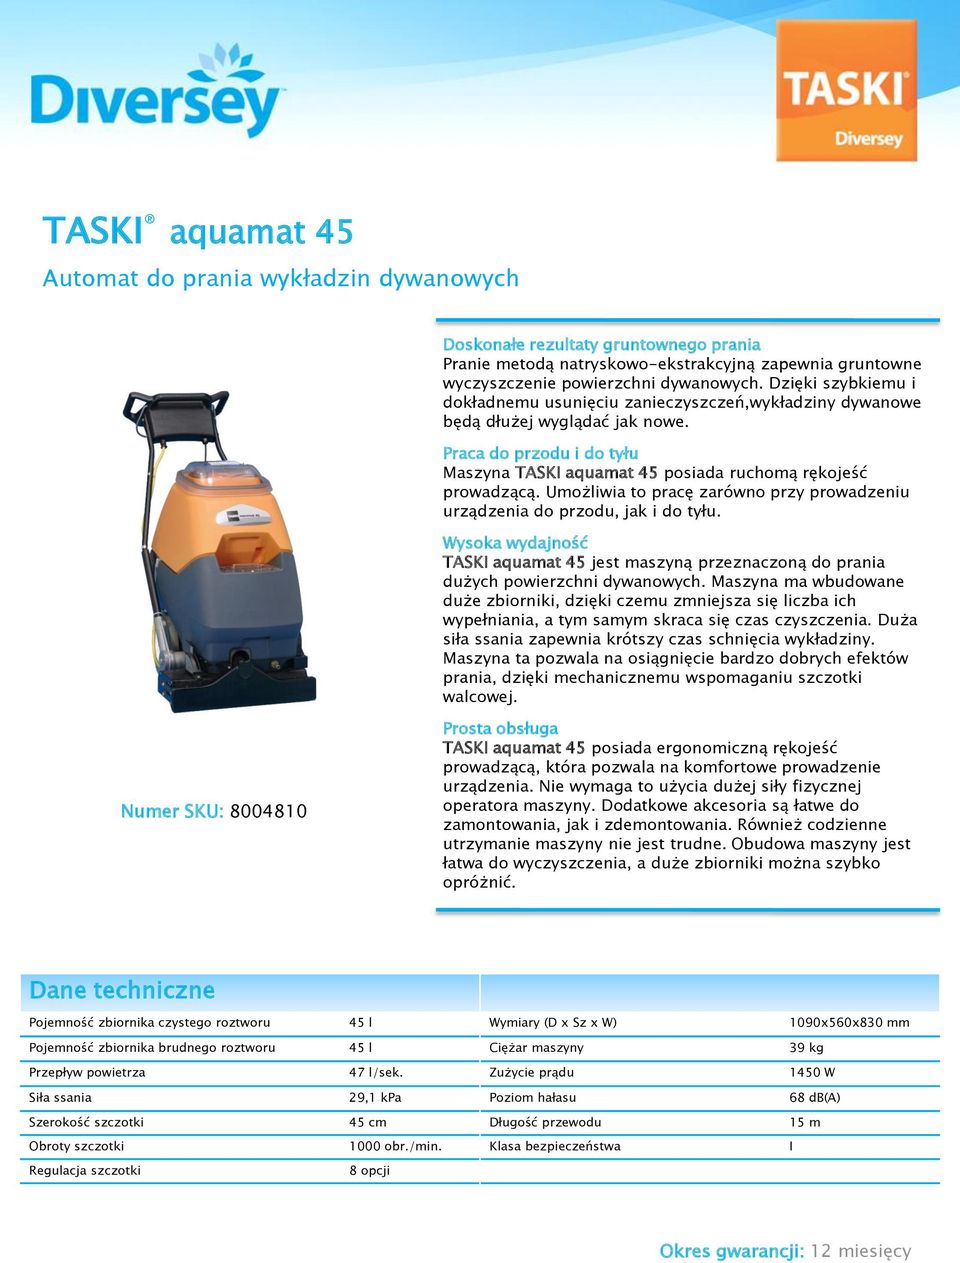 Umożliwia to pracę zarówno przy prowadzeniu urządzenia do przodu, jak i do tyłu. Wysoka wydajność TASKI aquamat 45 jest maszyną przeznaczoną do prania dużych powierzchni dywanowych.